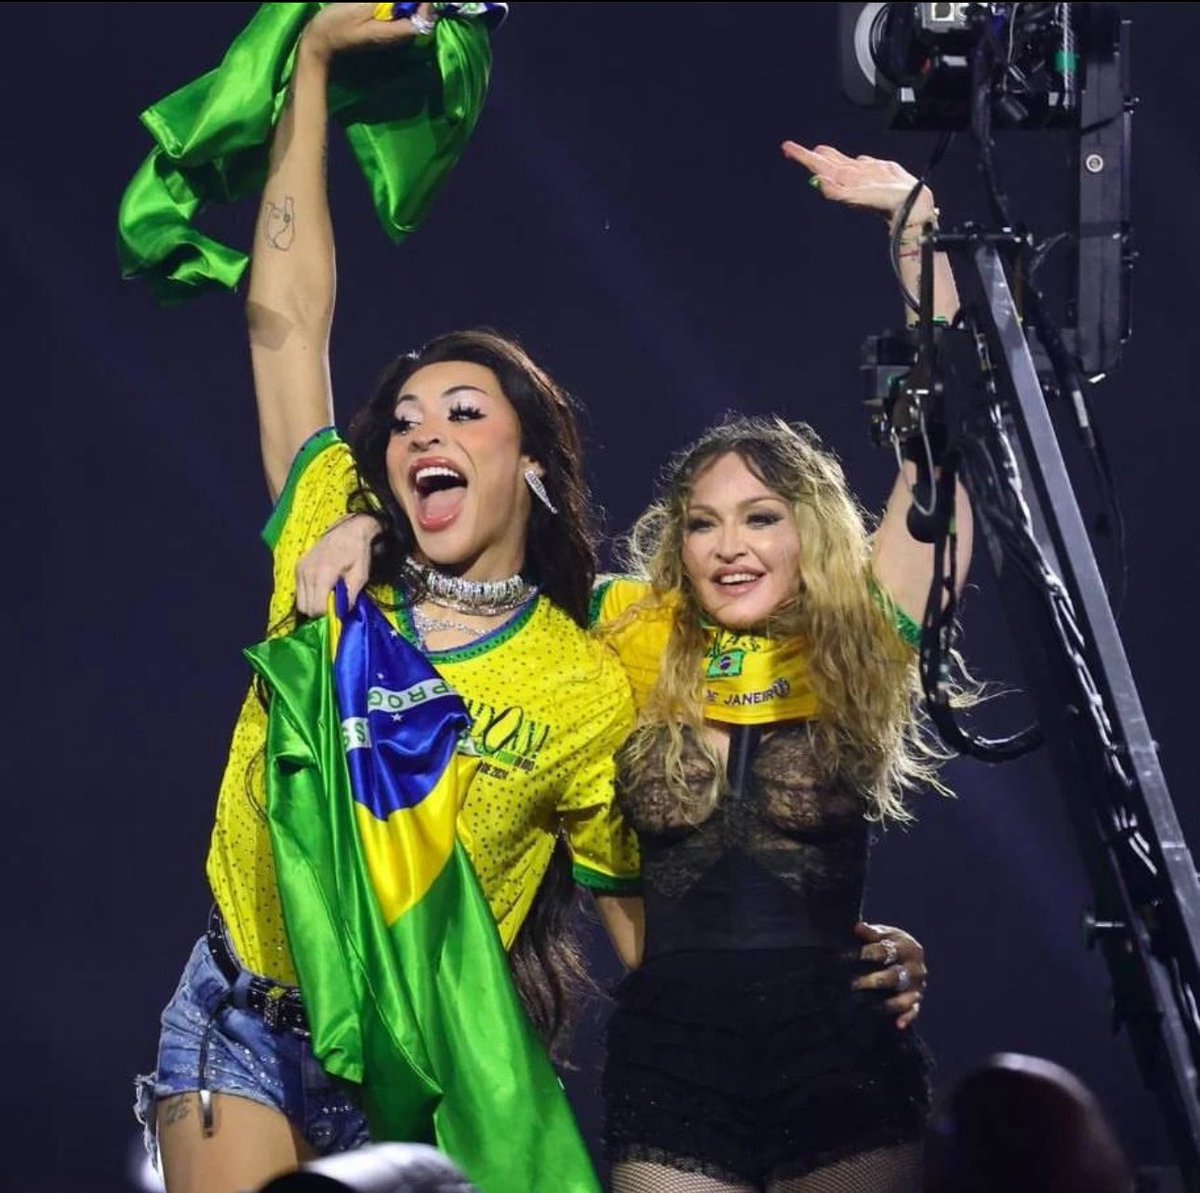 Camisa do Brasil é símbolo de orgia, viadagem e putaria! Acabei de jogar a minha fora. Repassem para todo cidadão de bem e de família. 🆘🗣️